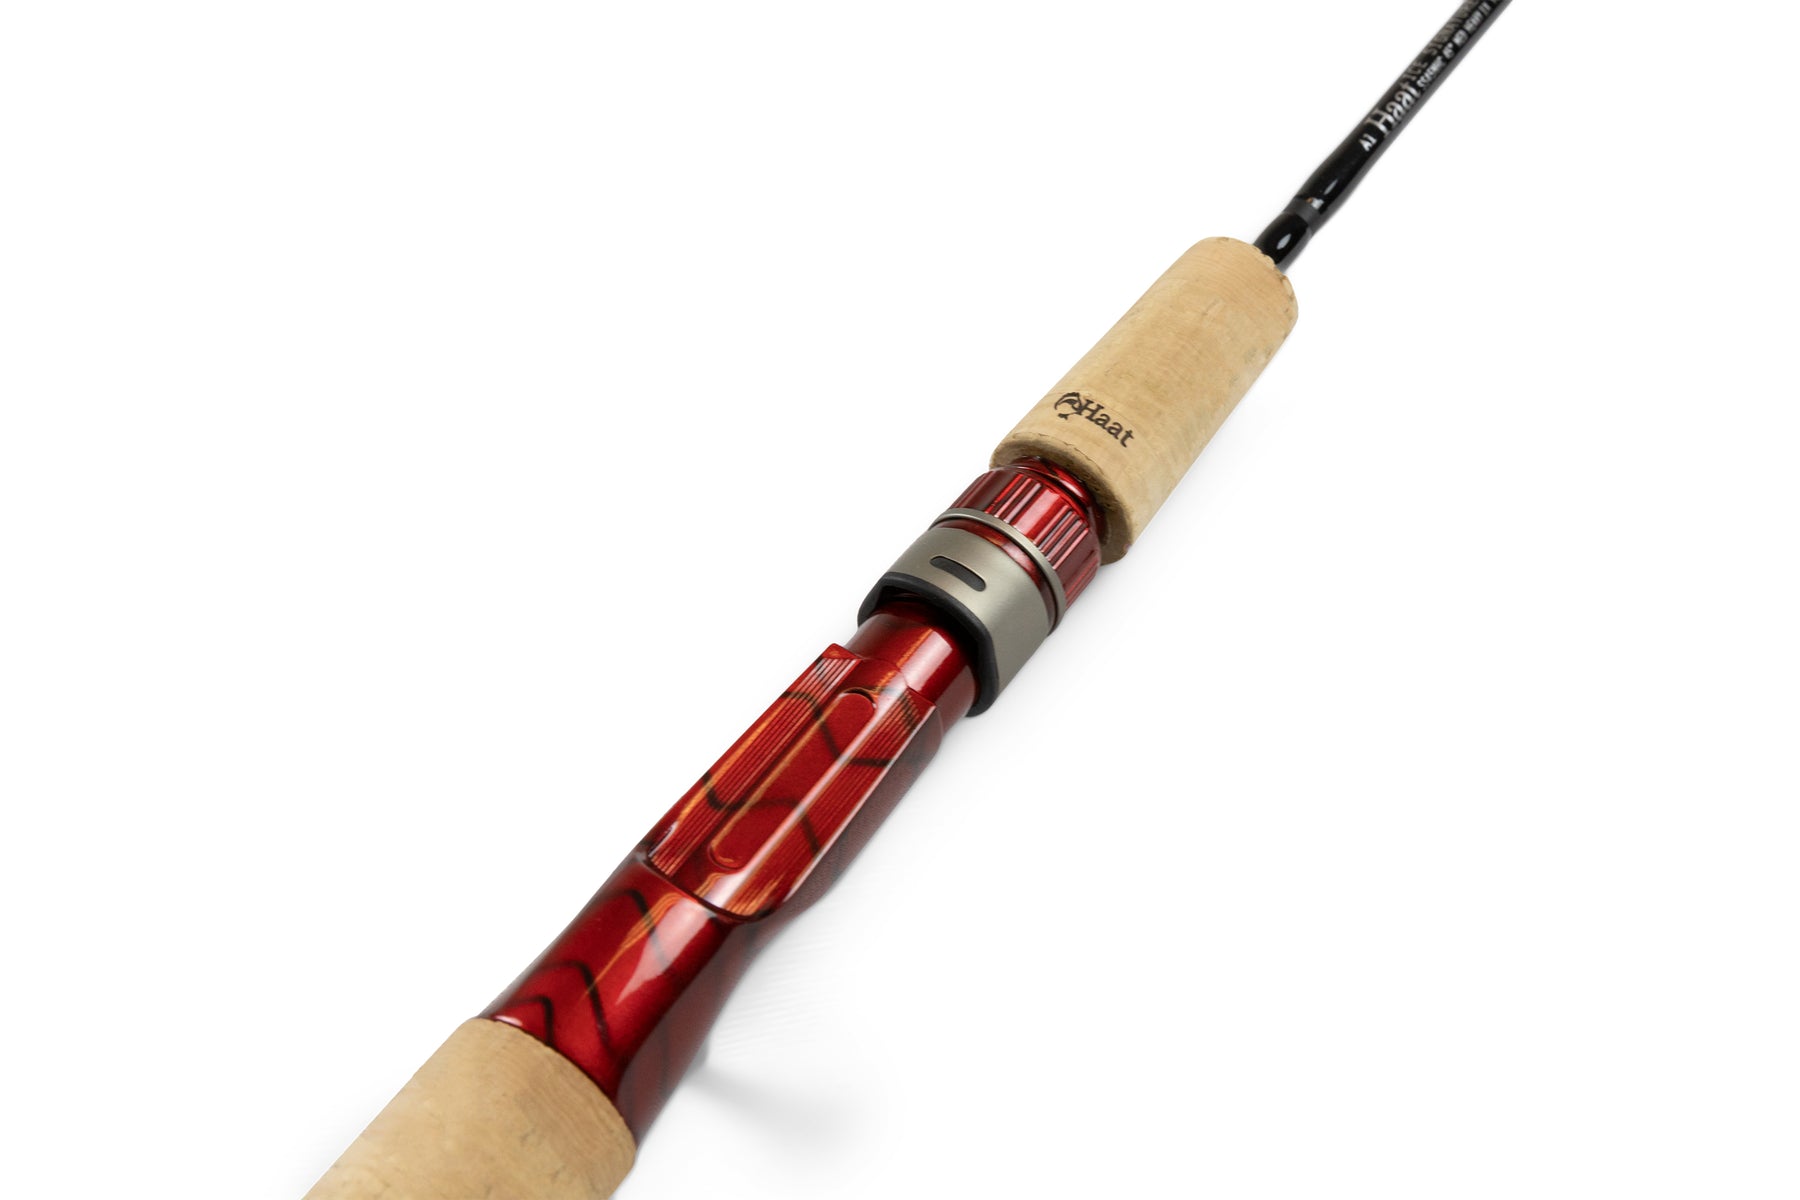 45 Medium-Light Casting Ice Fishing Rod